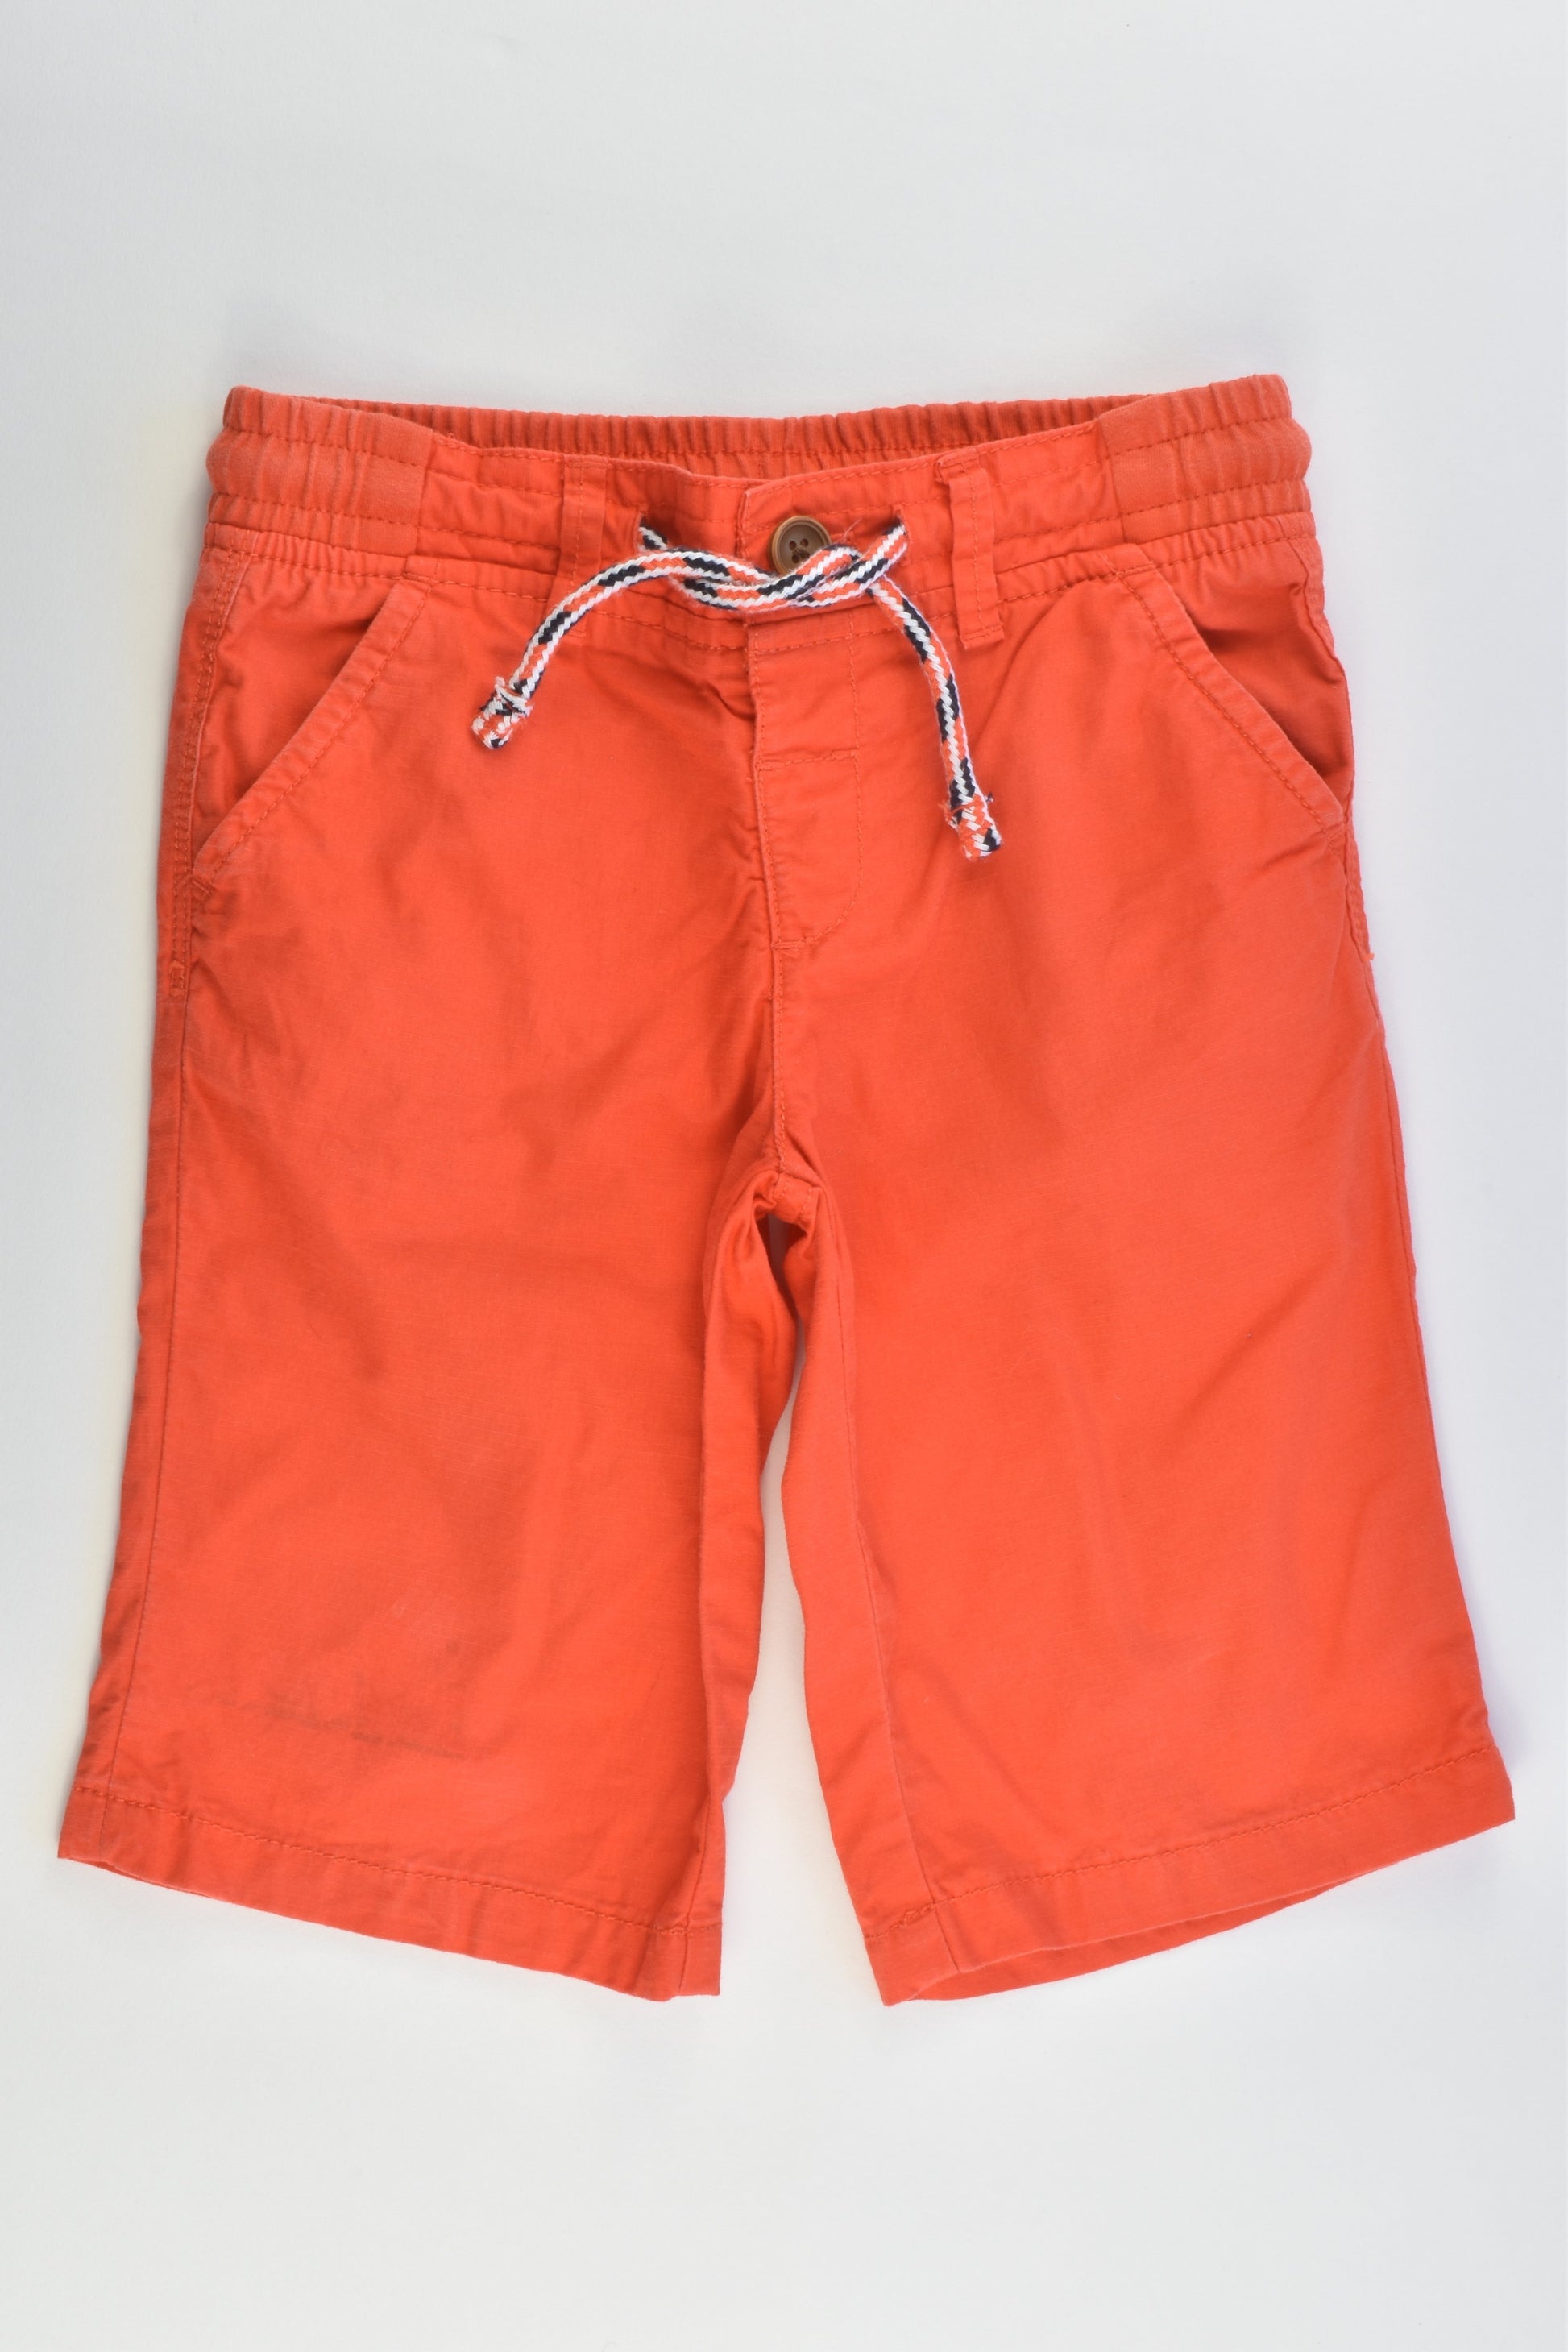 M&S Size 3-4 (104 cm) Shorts